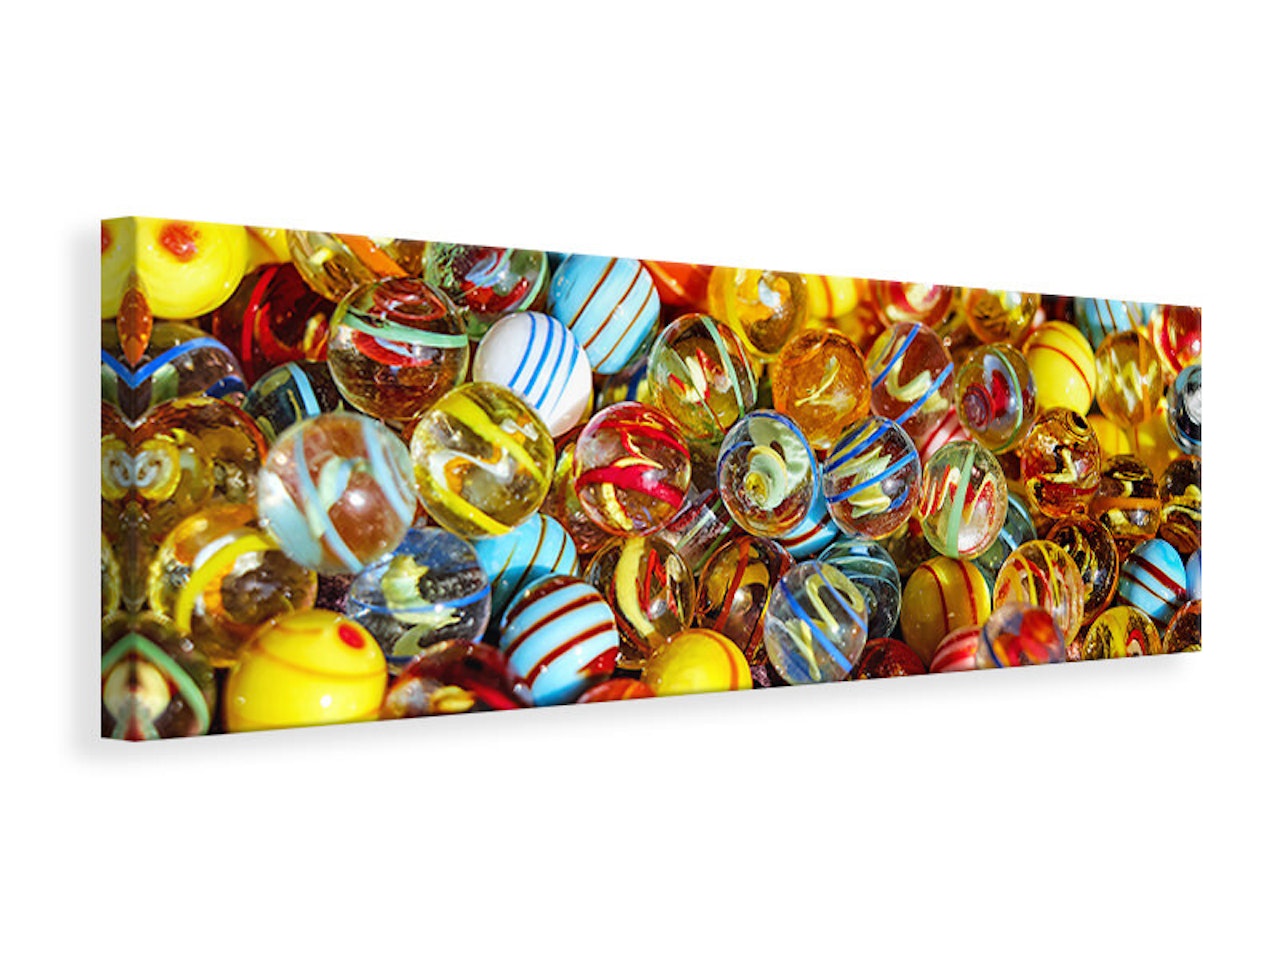 Ljuddämpande tavla - glass beads